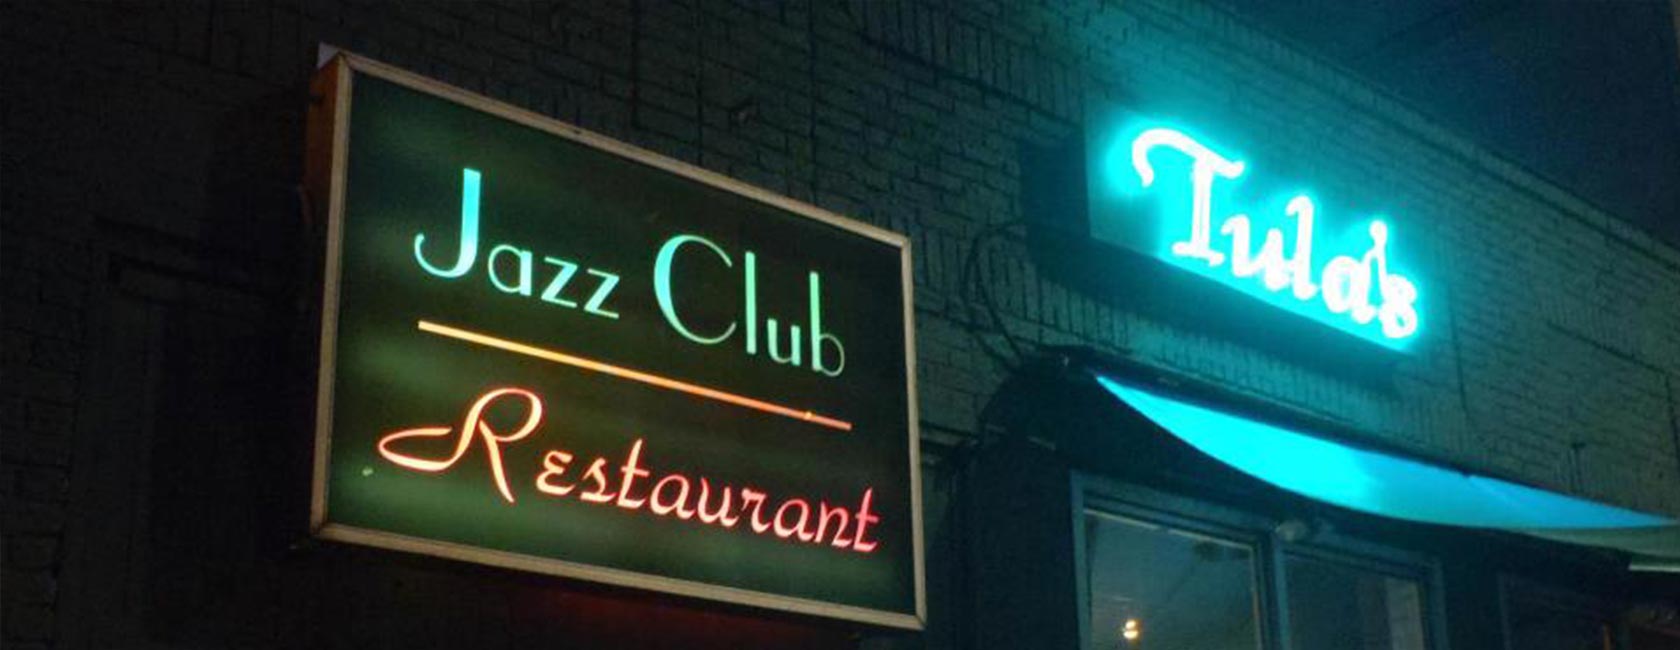 Tula's Jazz Club Restaurant